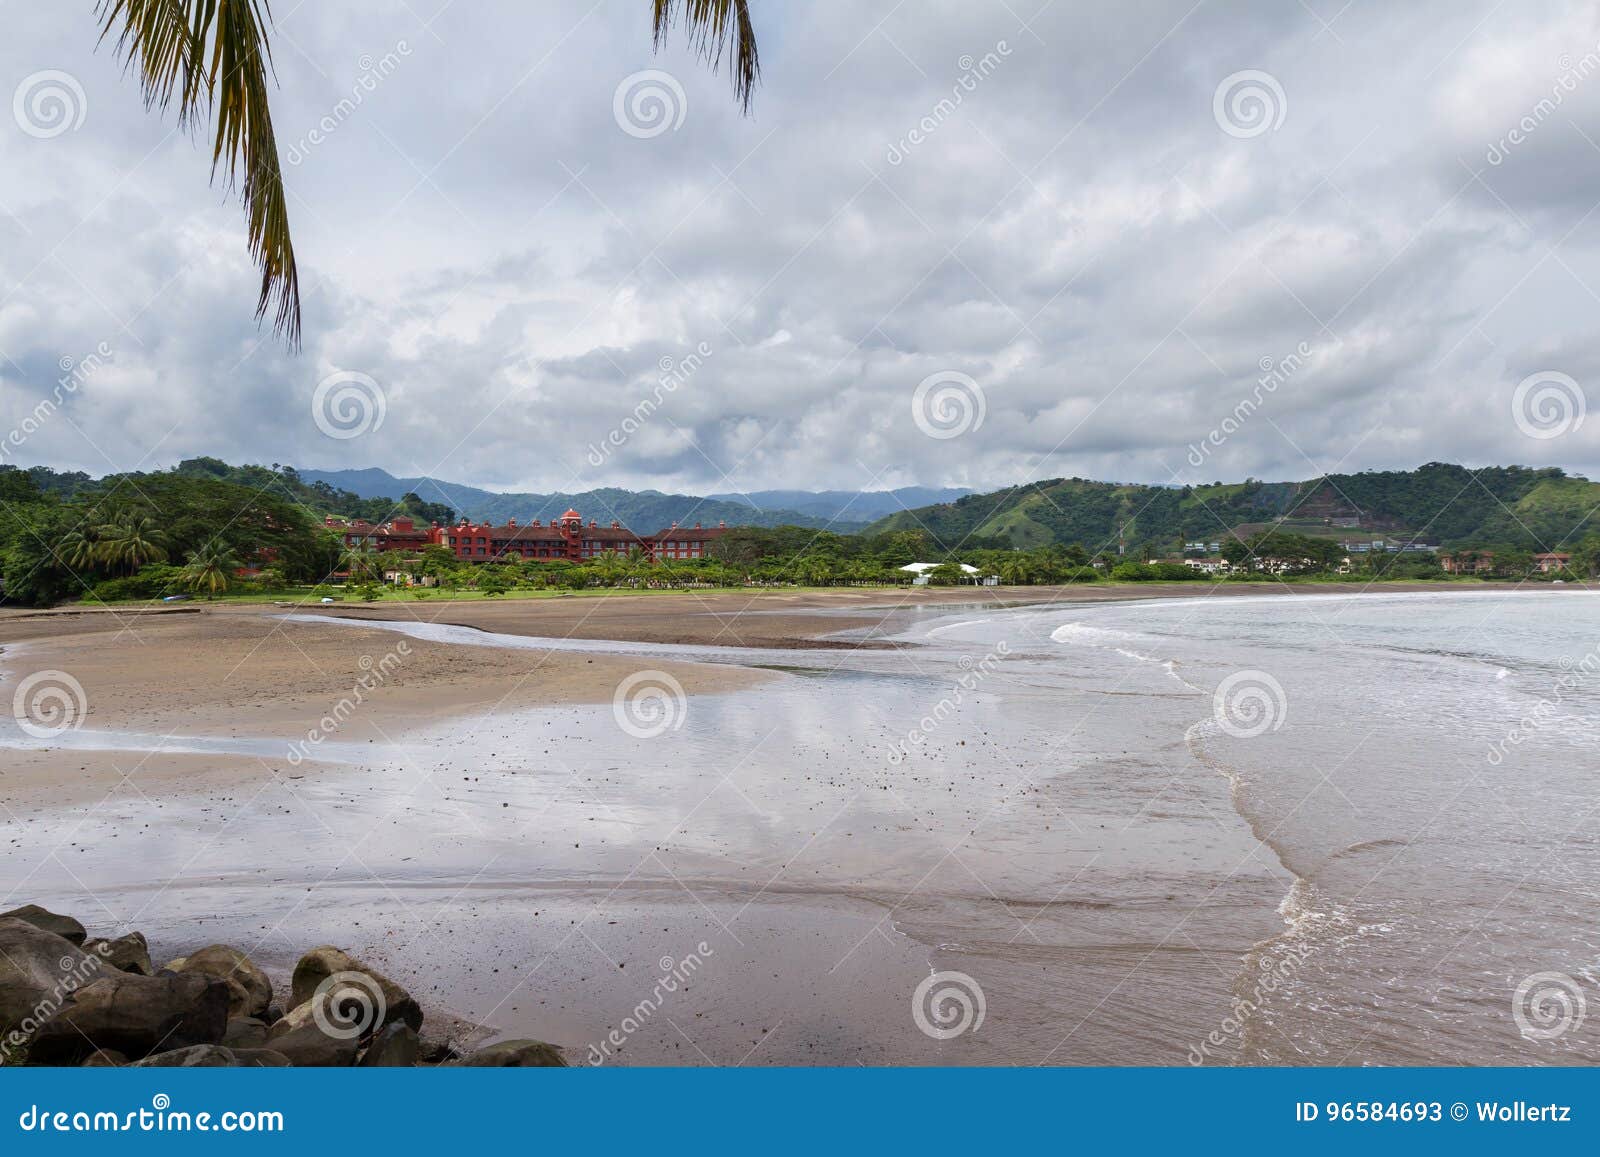 Hotel Della Spiaggia in Costa Rica Fotografia Stock Editoriale ...